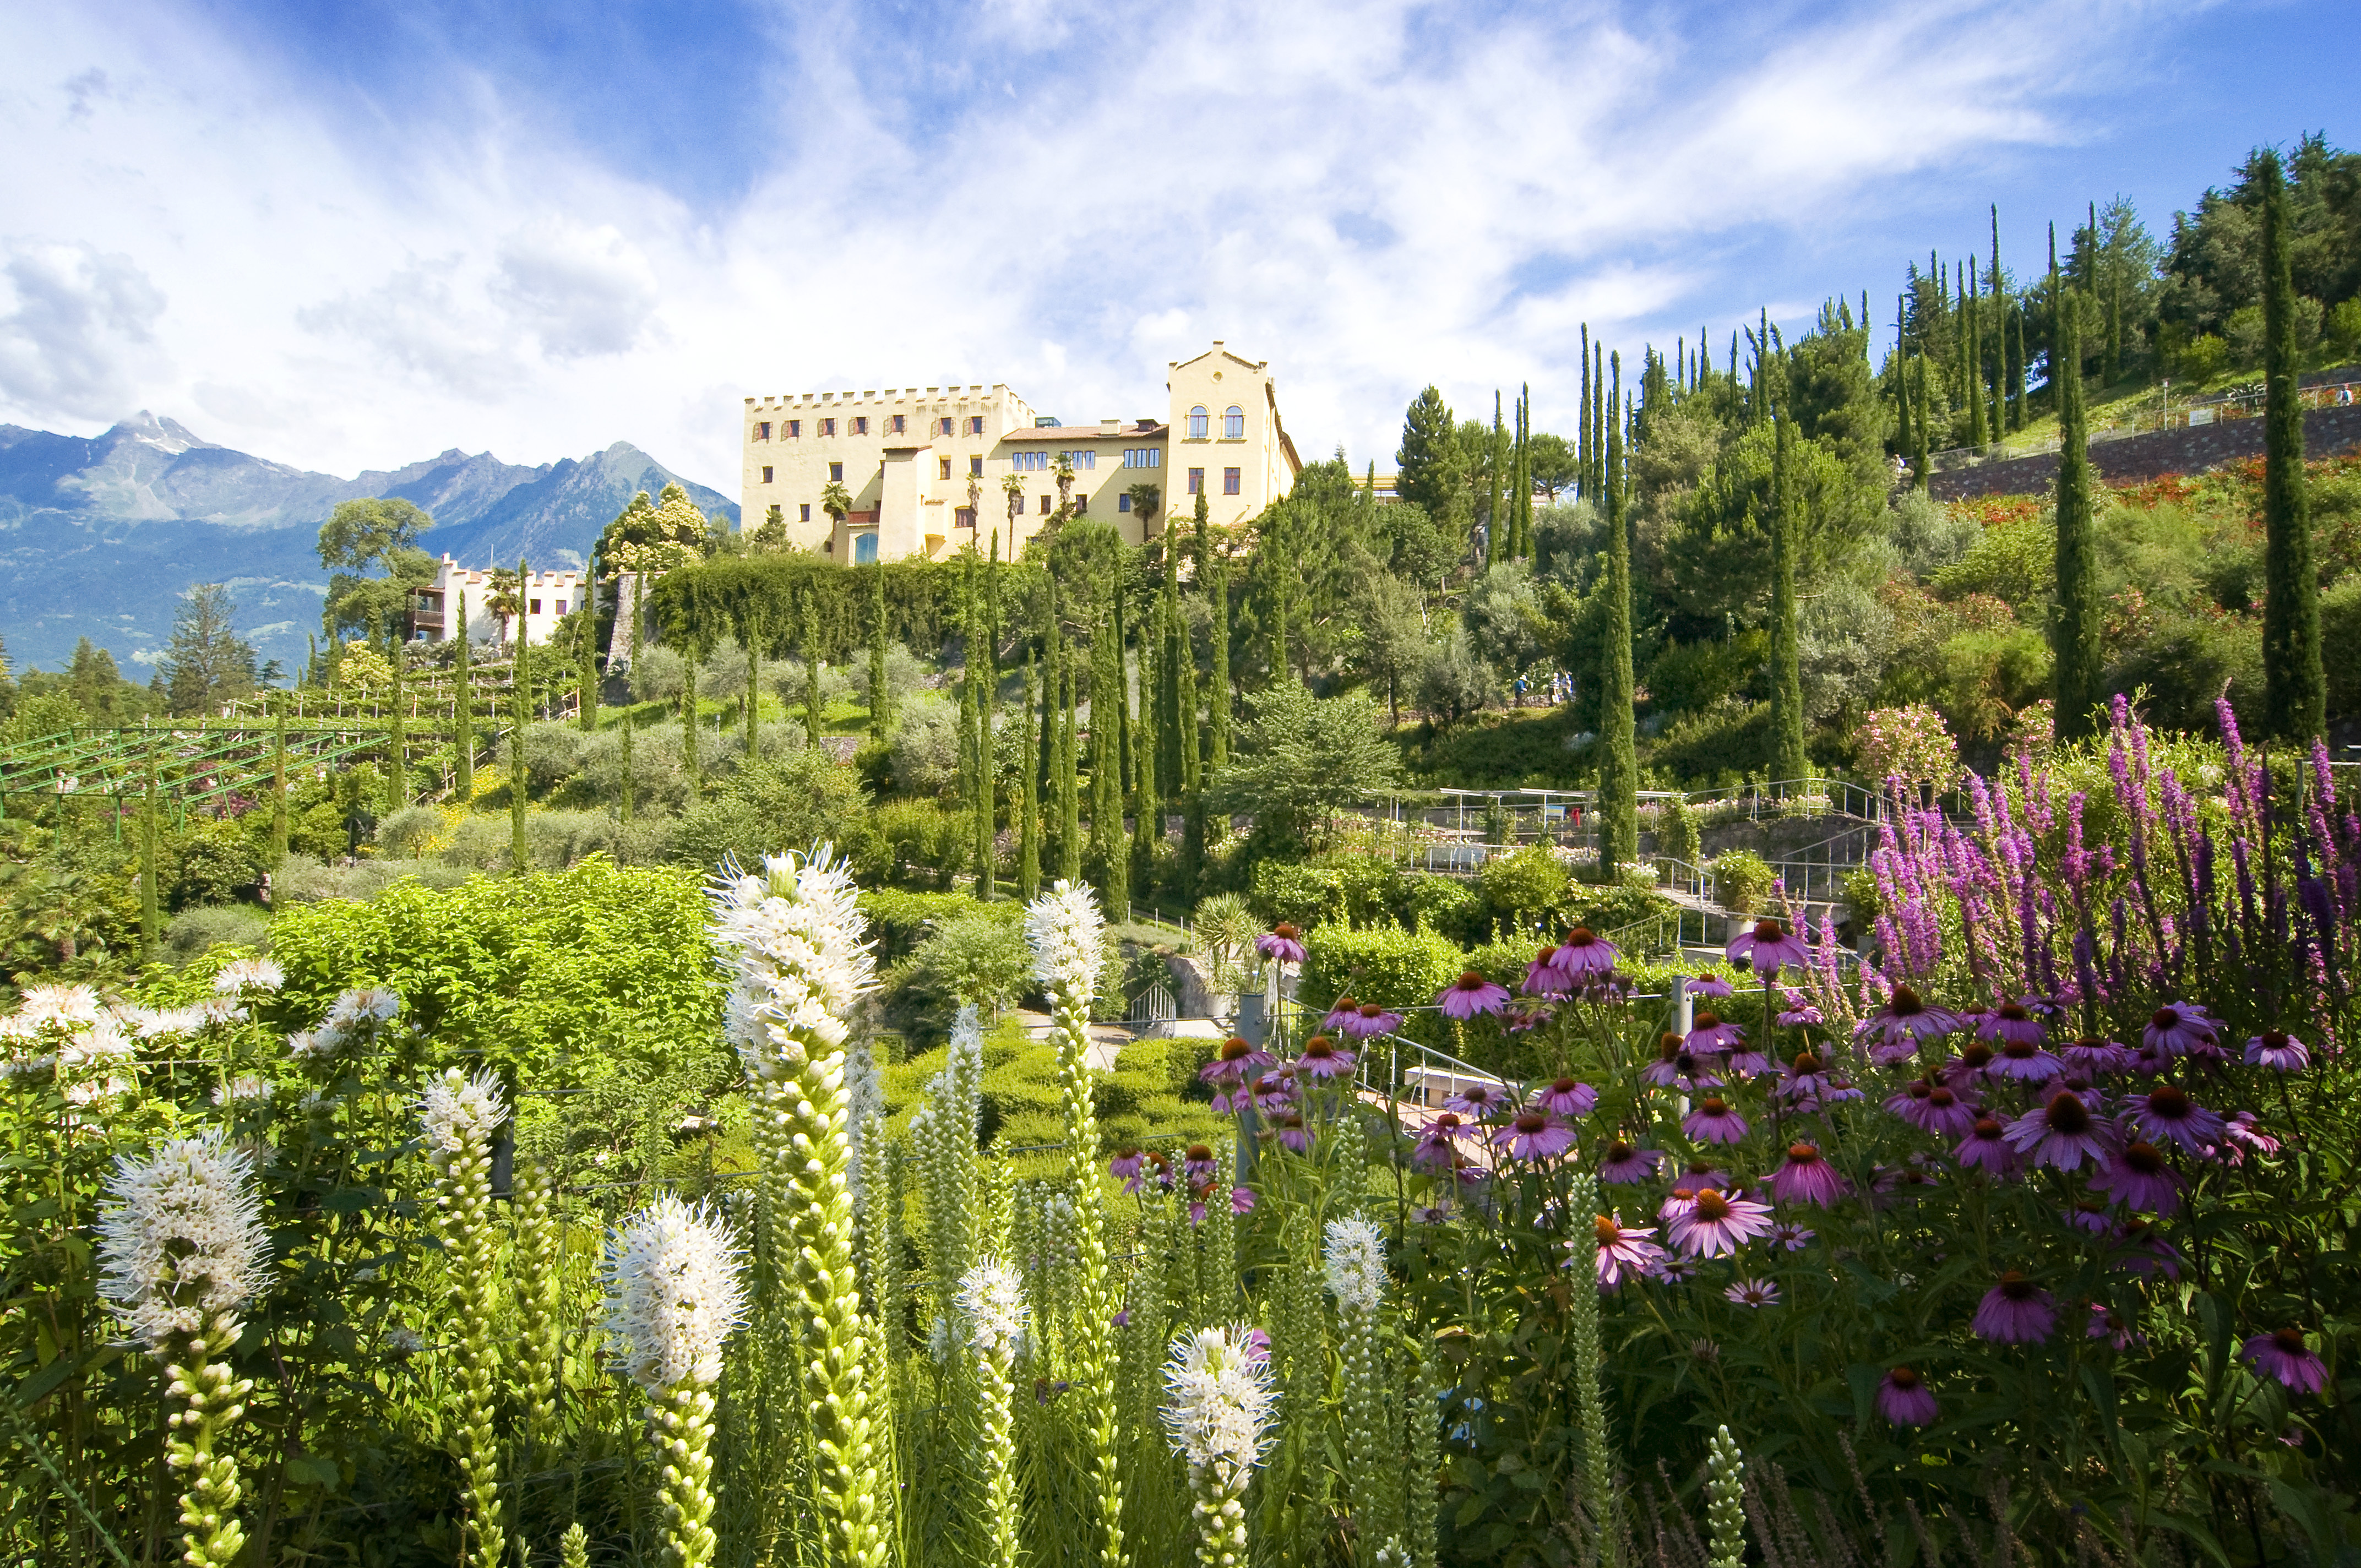 Zu Füßen der historischen Sommerresidenz von Kaiserin Sisi in Schloss Trauttmansdorff bei Meran erstreckt sich das Blumenmeer über die botanischen Gärten in ihrer ganzen Artenvielfalt.